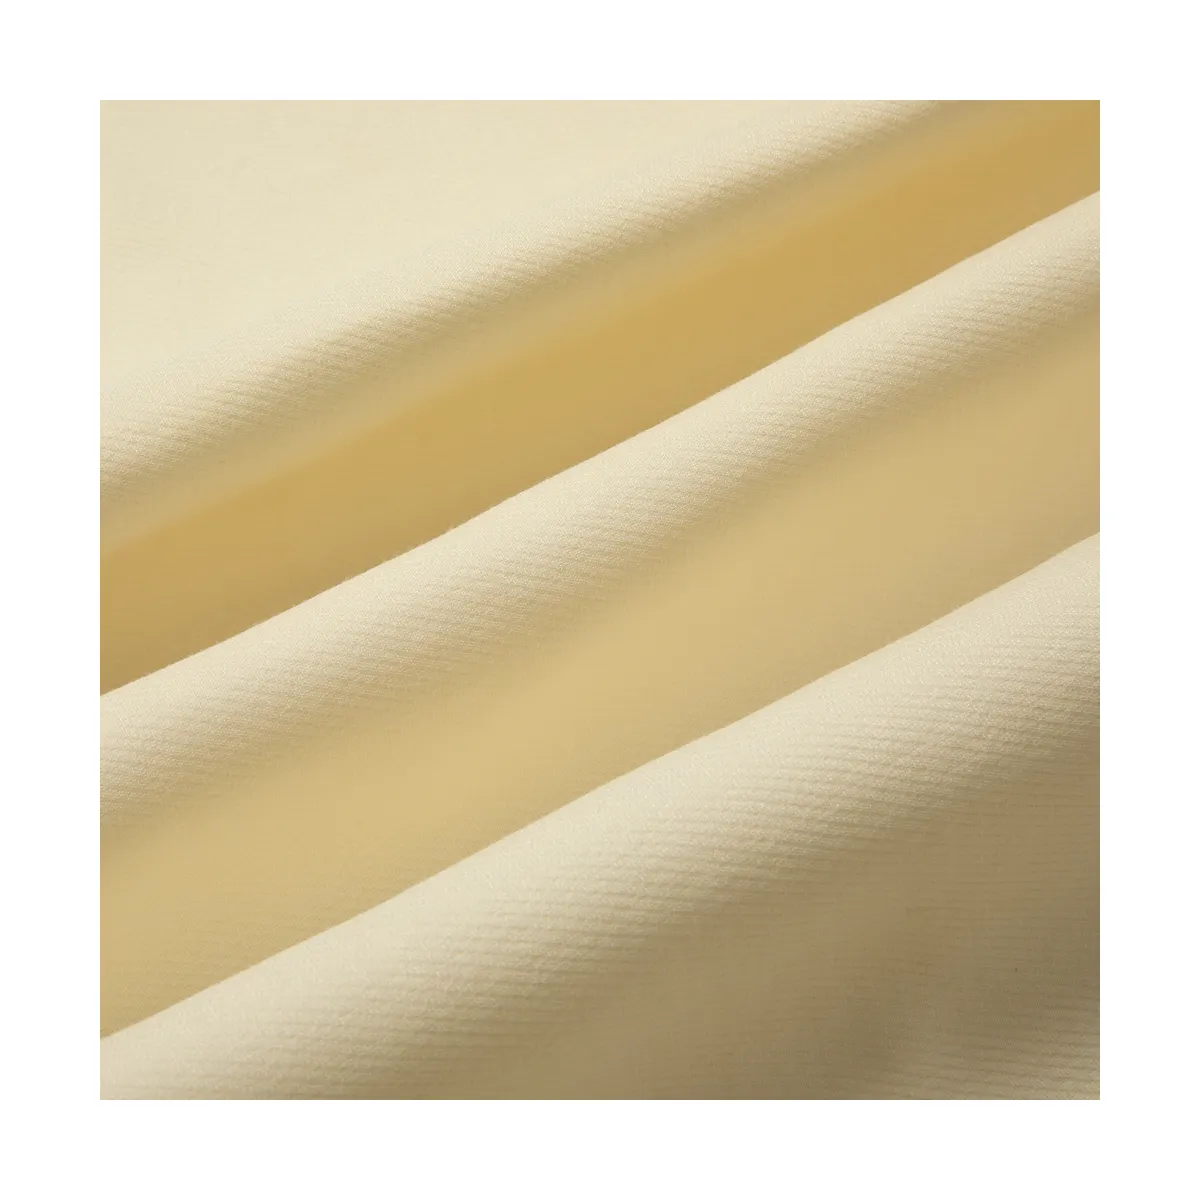 Tecido têxtil de seda fibra natural para vestido clássico, tecido de alta qualidade